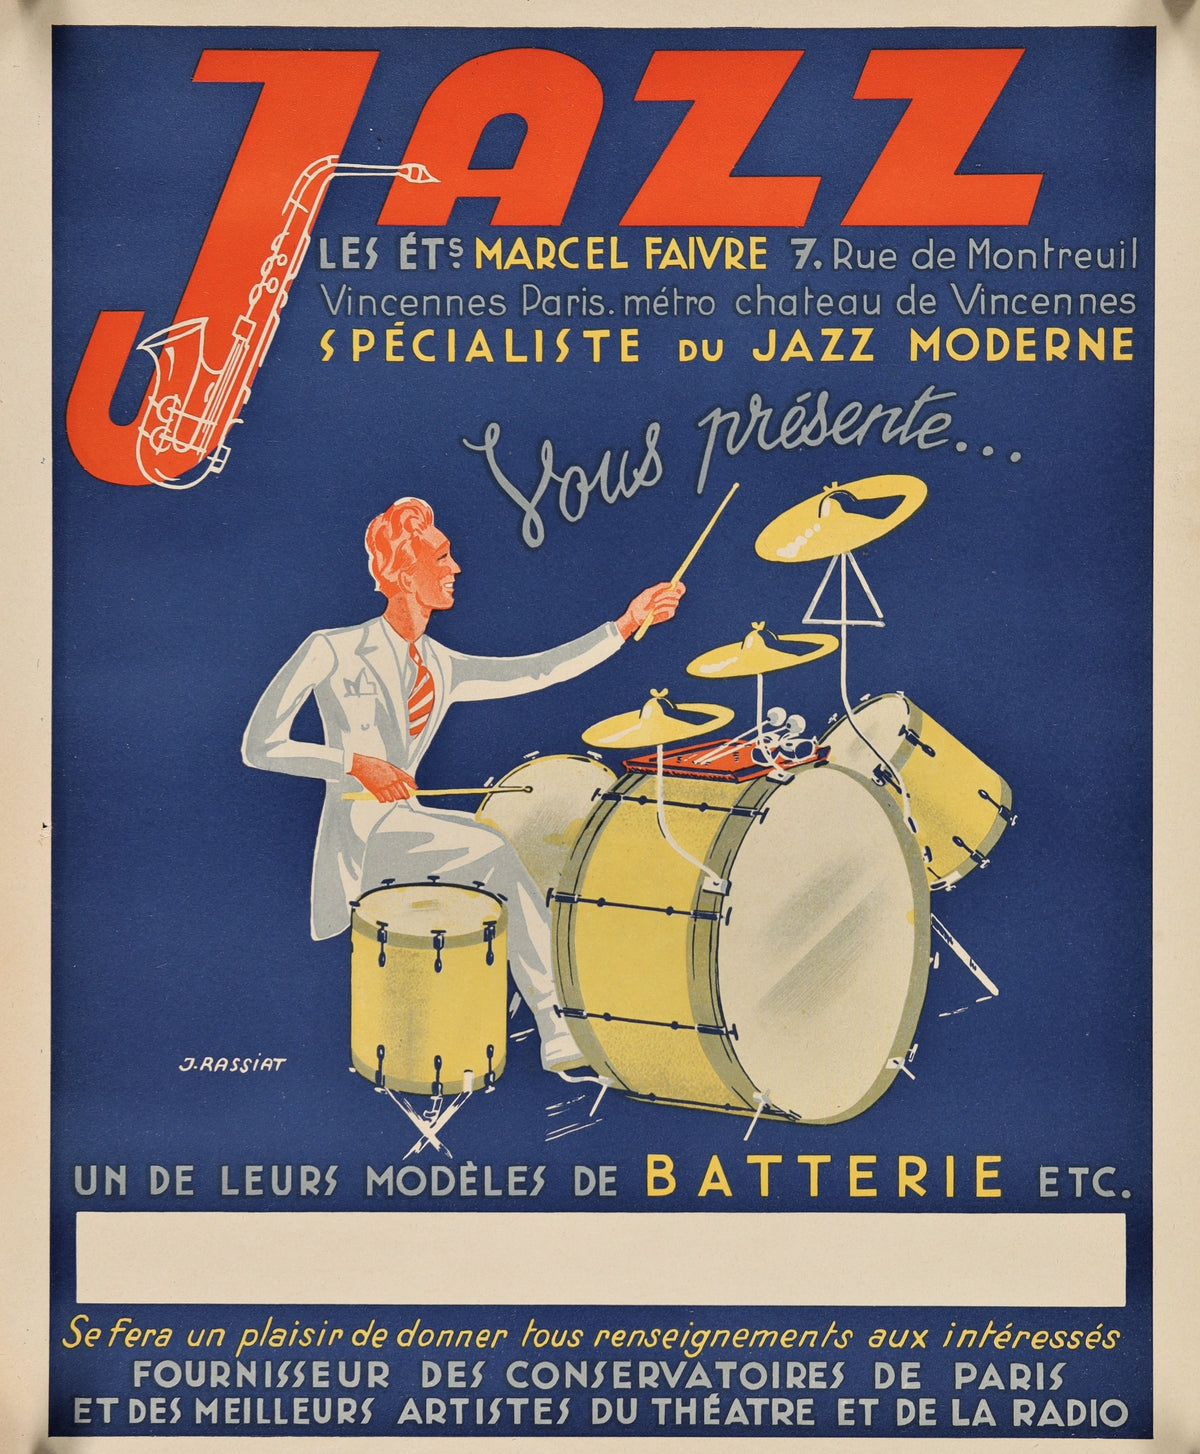 Jazz, Marcel Faivre - Authentic Vintage Poster